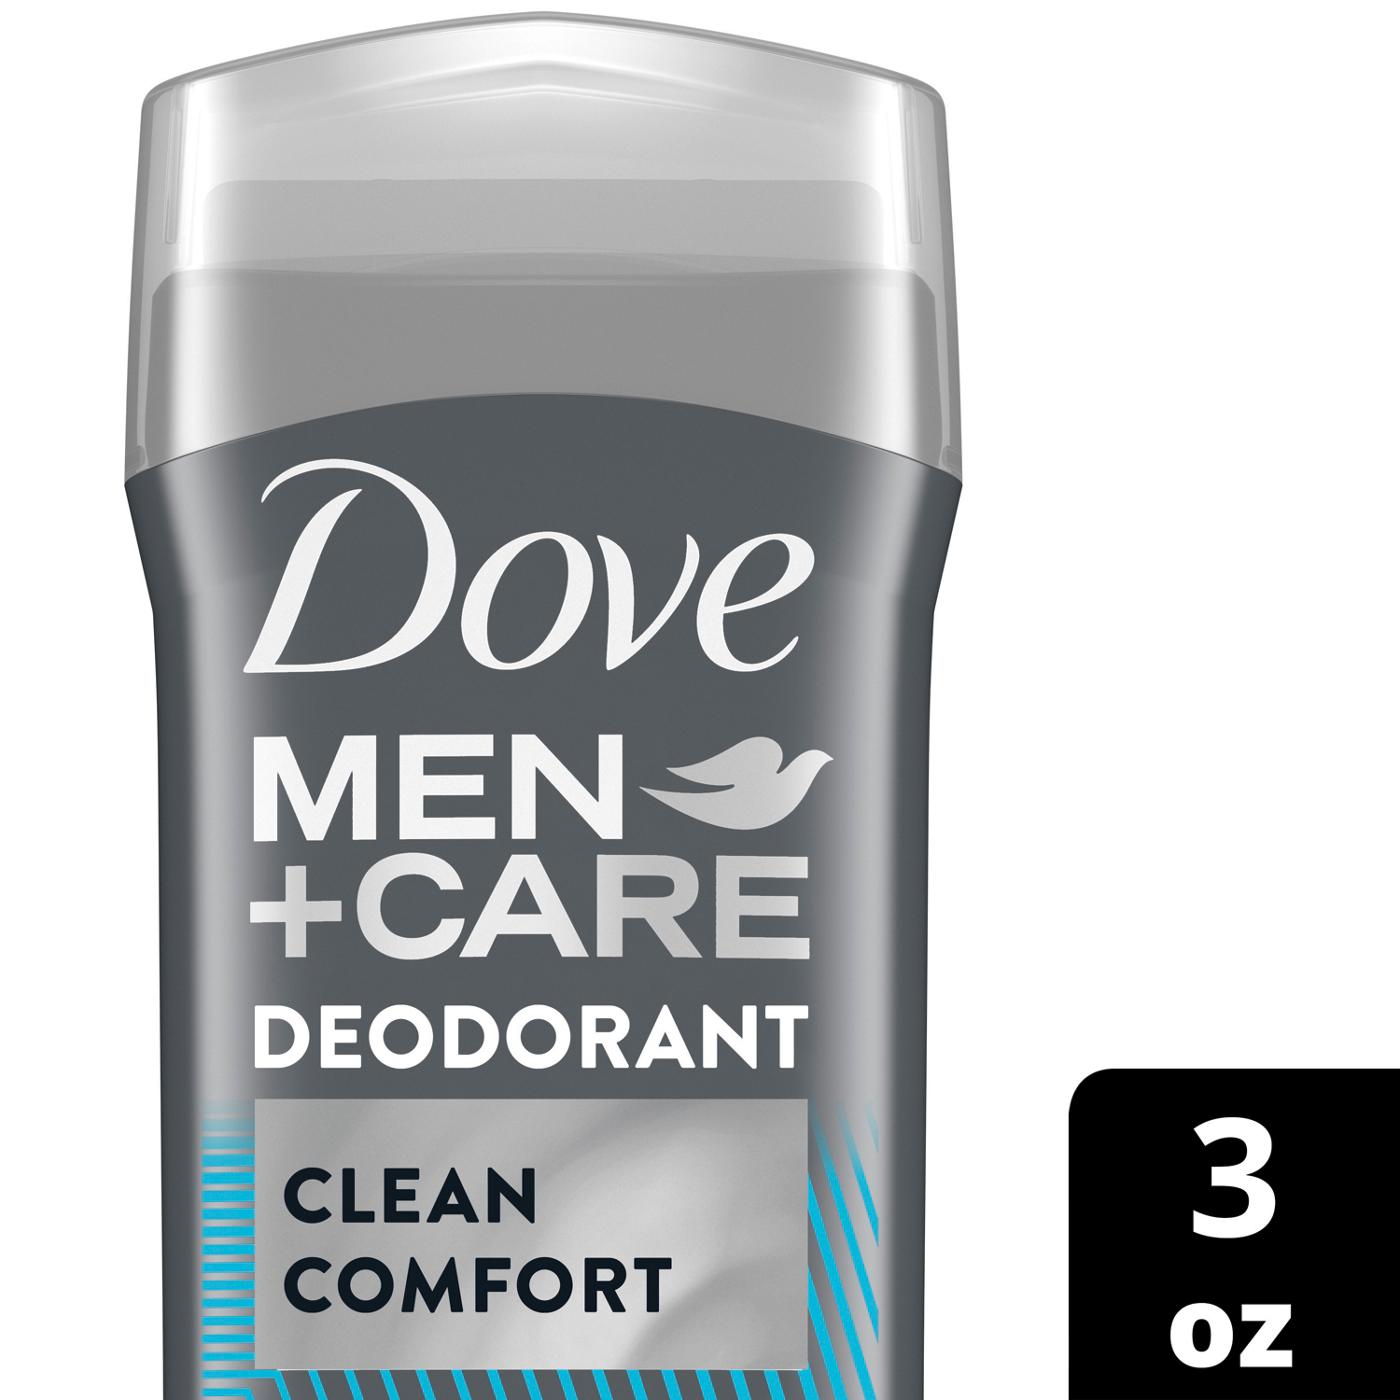 Dove Men+Care Clean Comfort Deodorant Stick; image 2 of 3